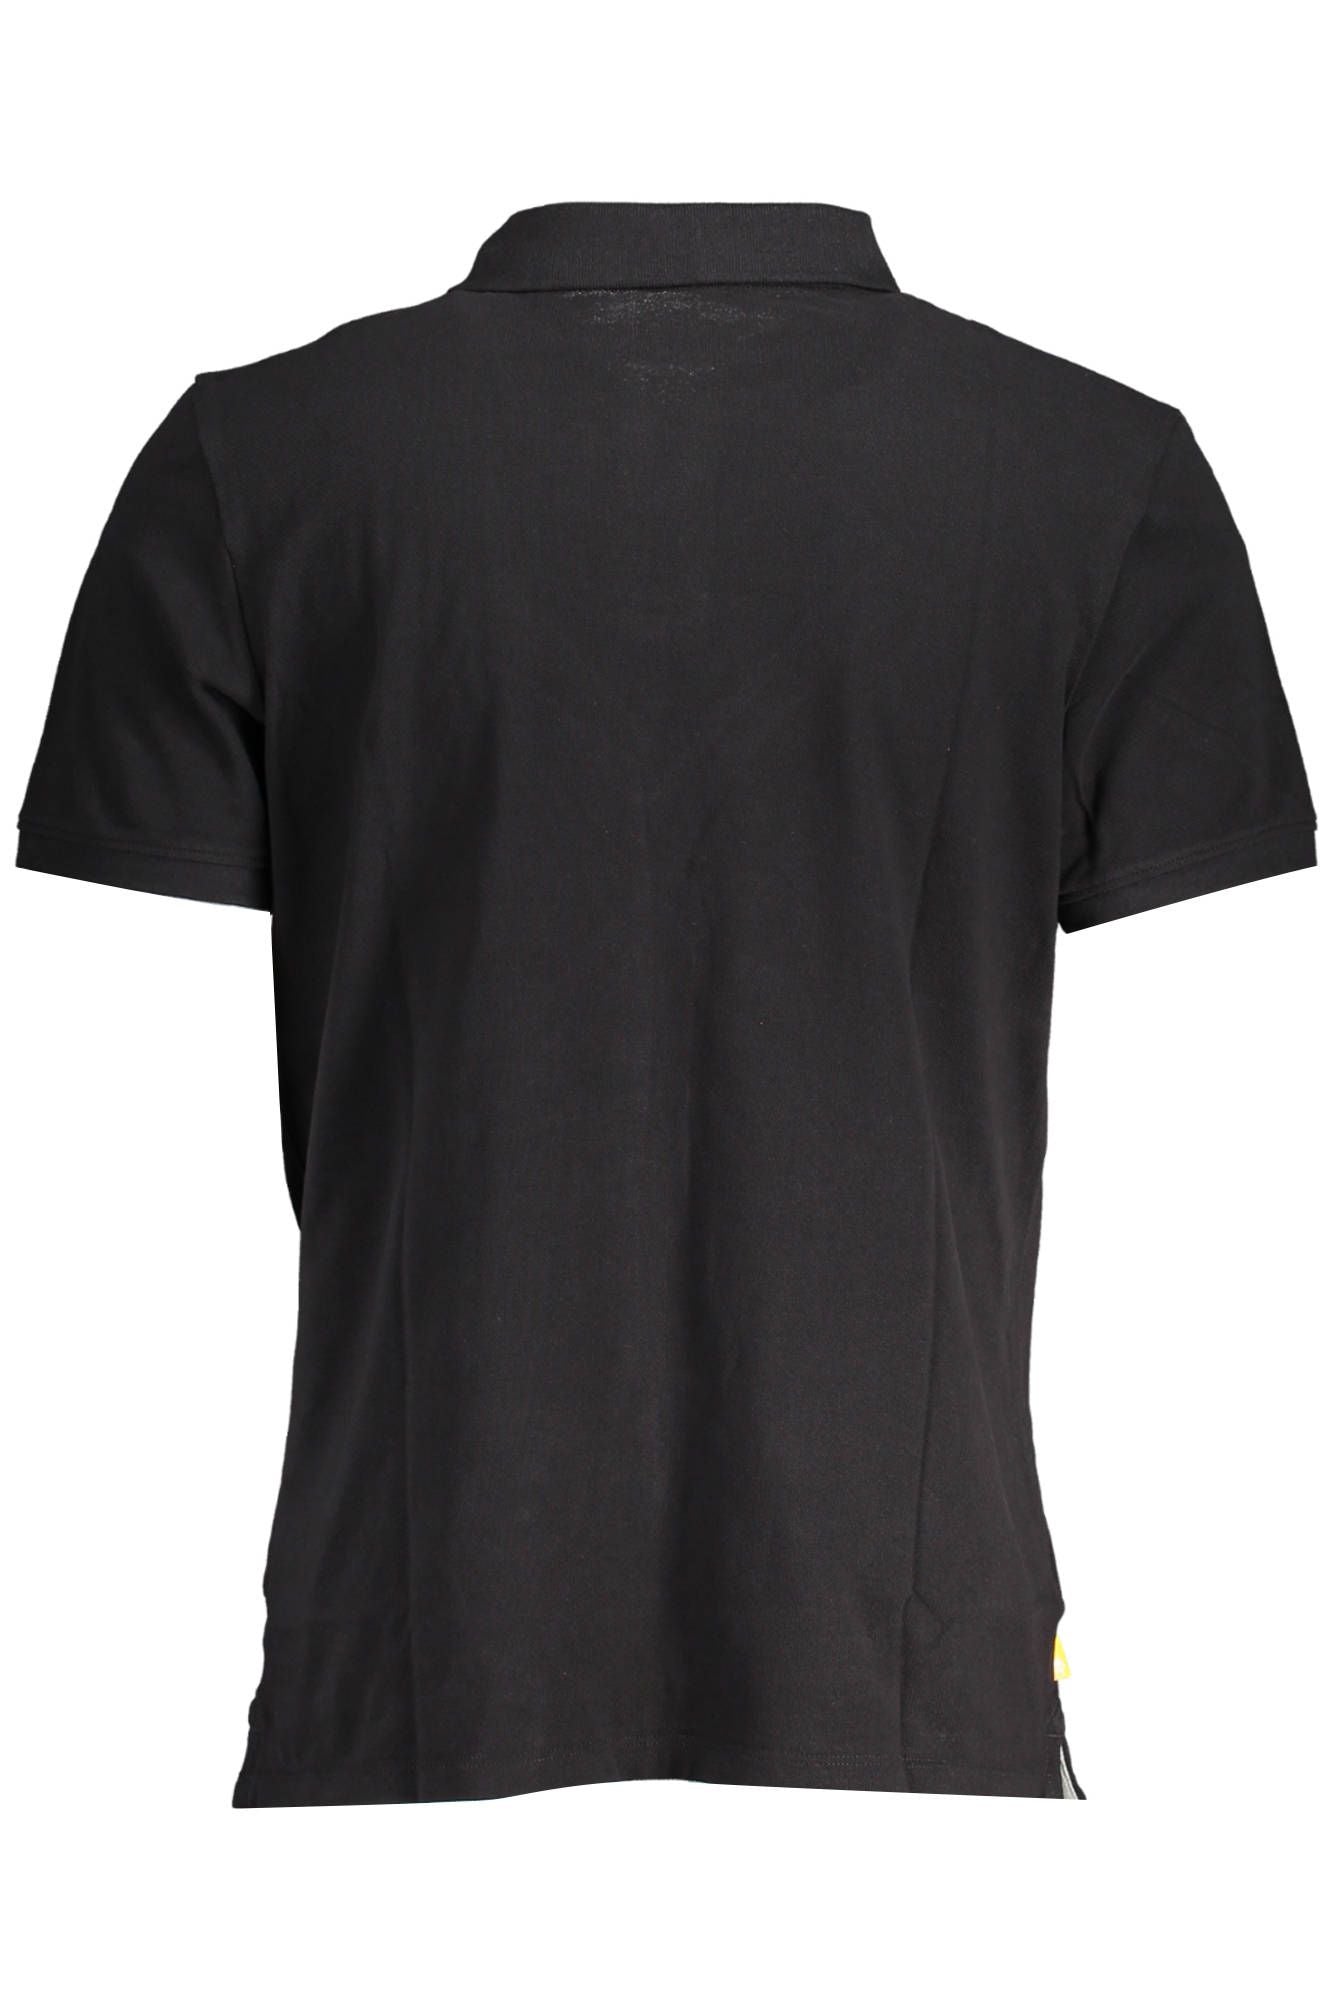 Sleek Black Polo Shirt with Emblem